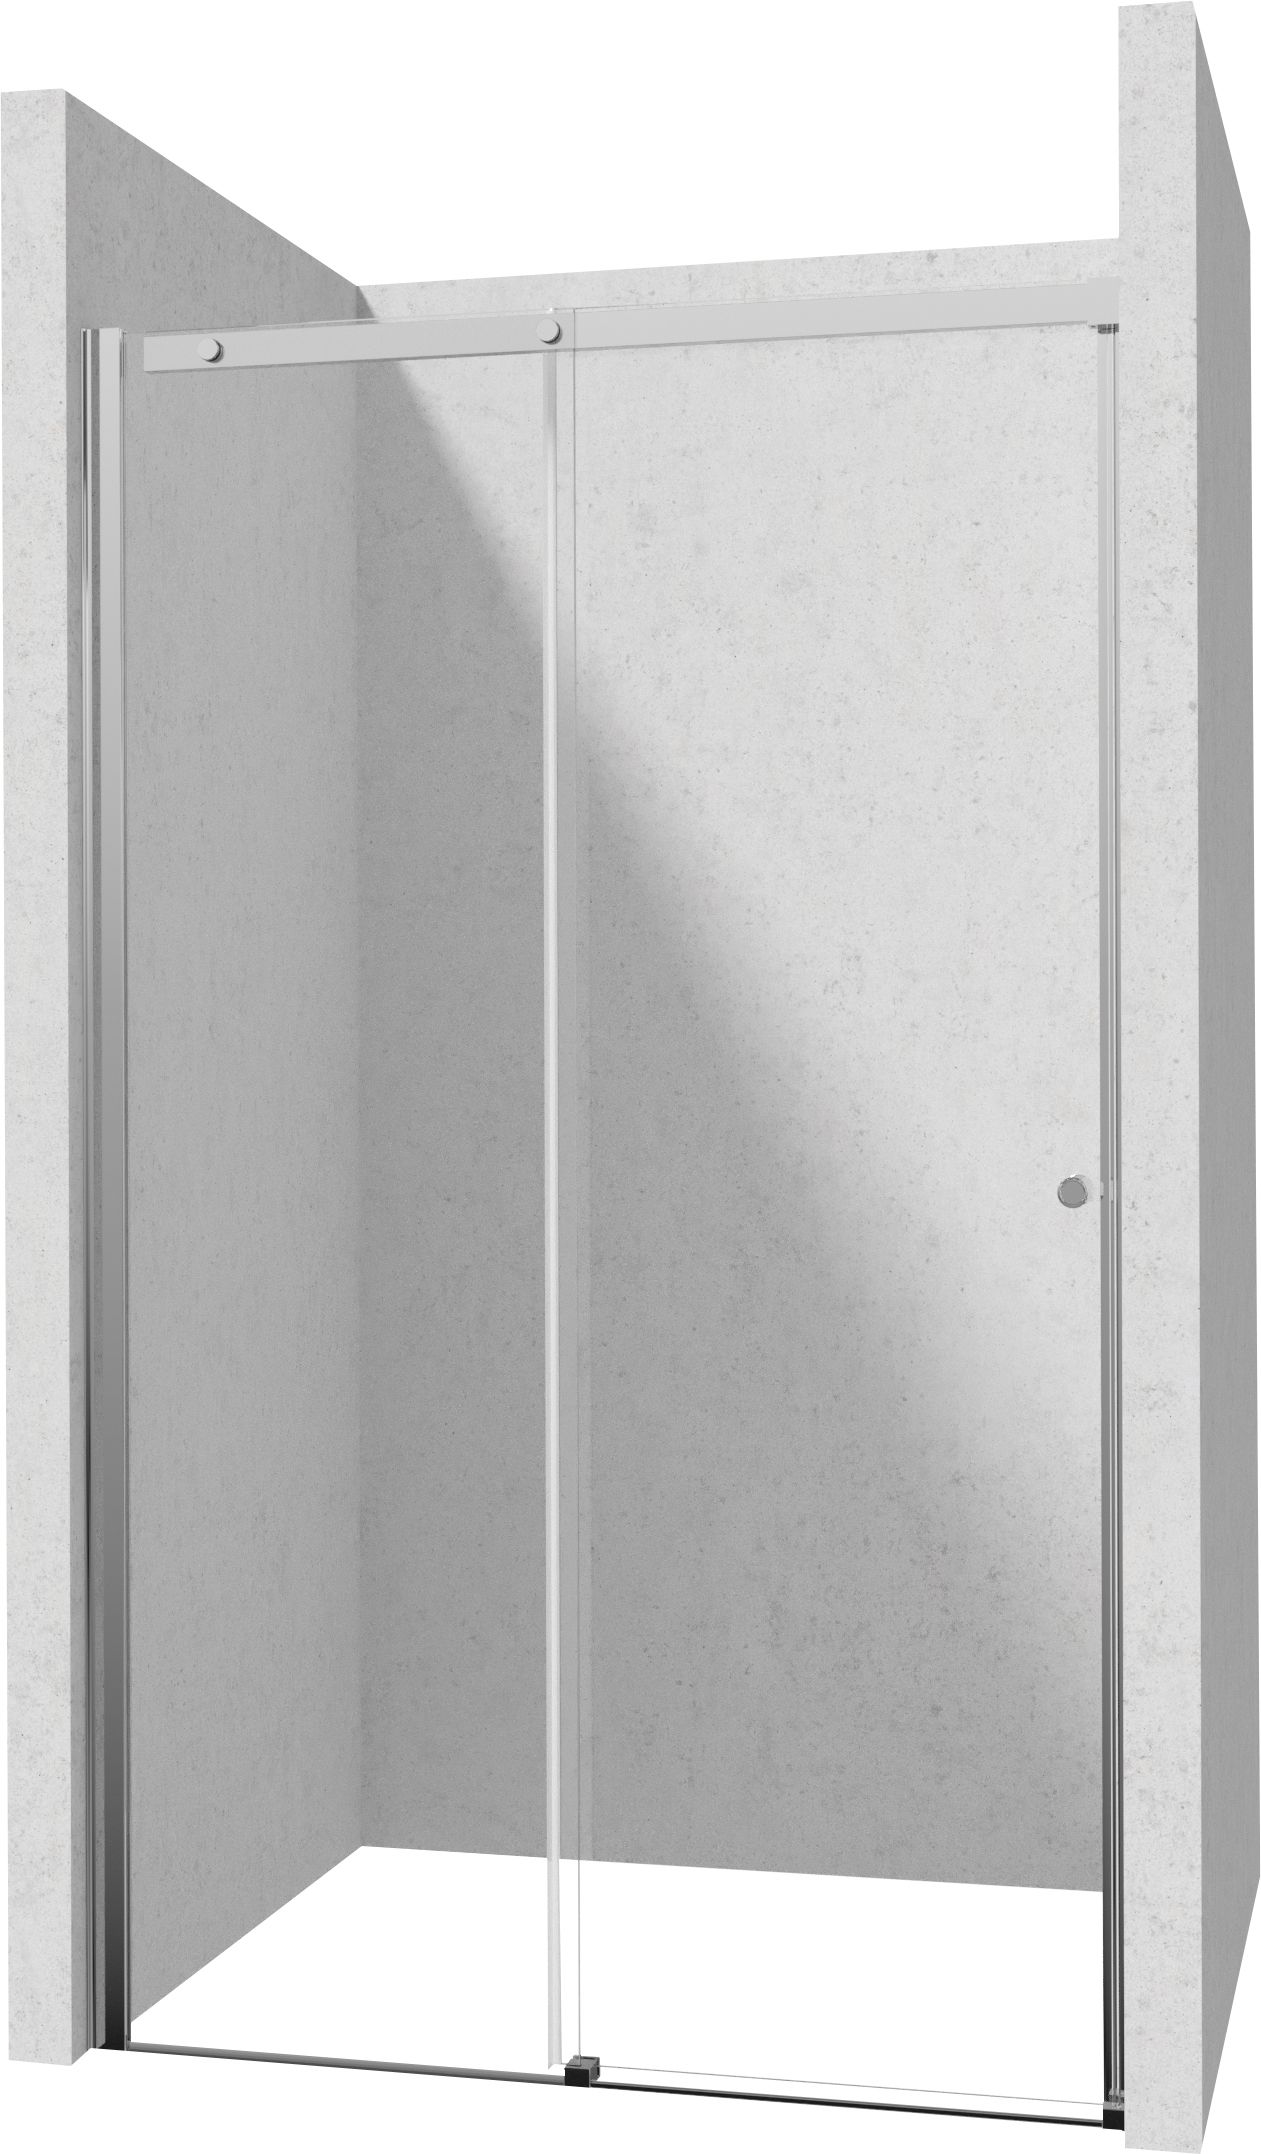 Drzwi prysznicowe 160 cm - przesuwne - KTSP016P - Główne zdjęcie produktowe